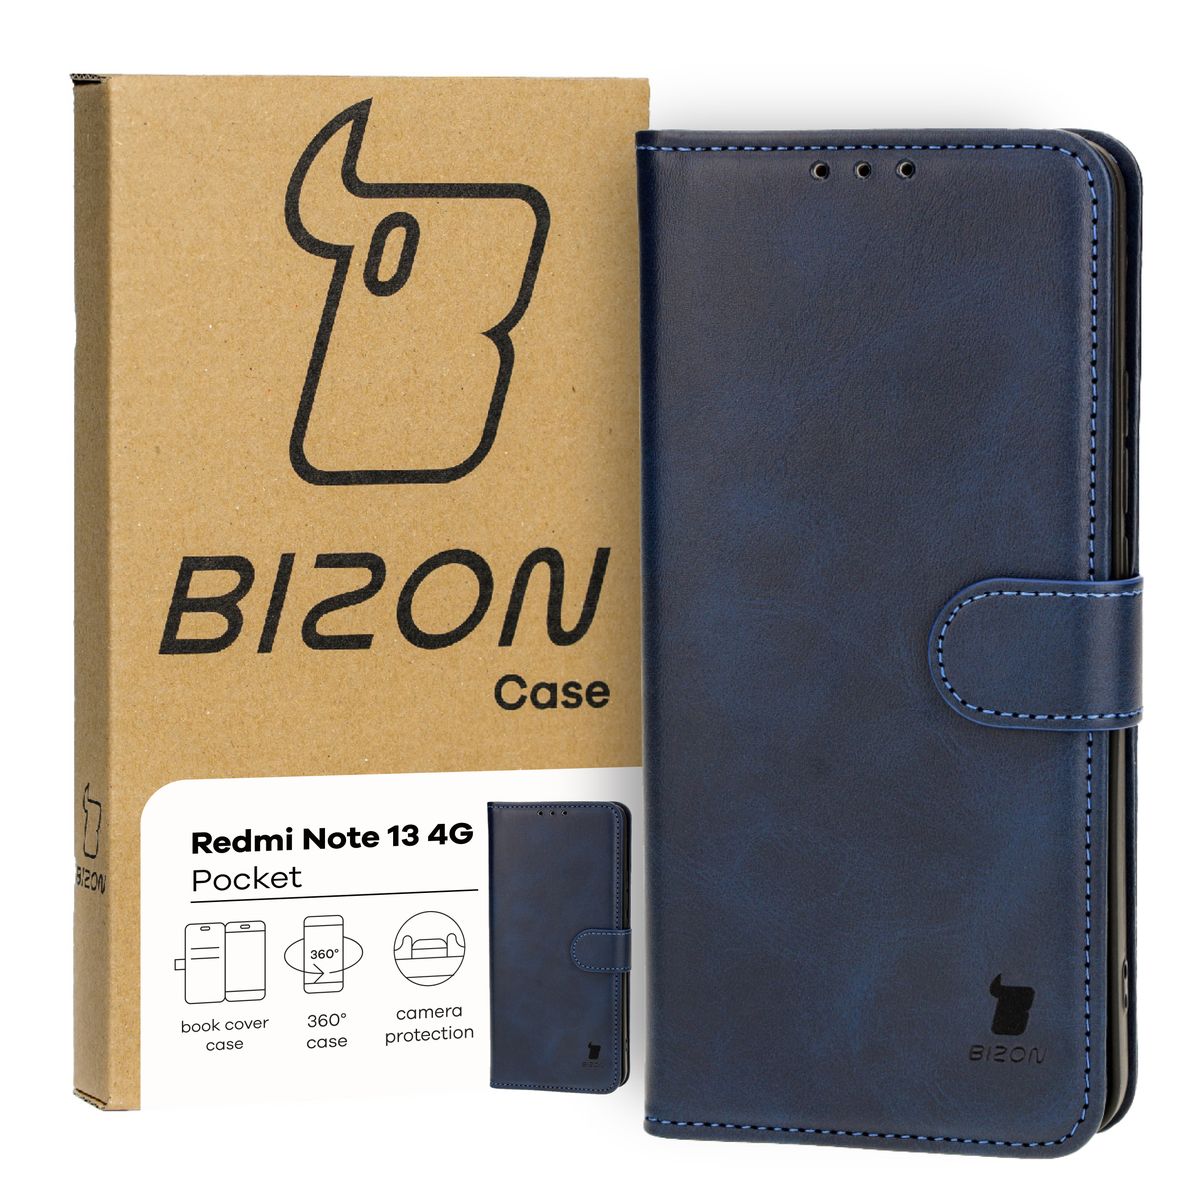 Schutzhülle für Xiaomi Redmi Note 13 4G, Bizon Case Pocket, Dunkelblau